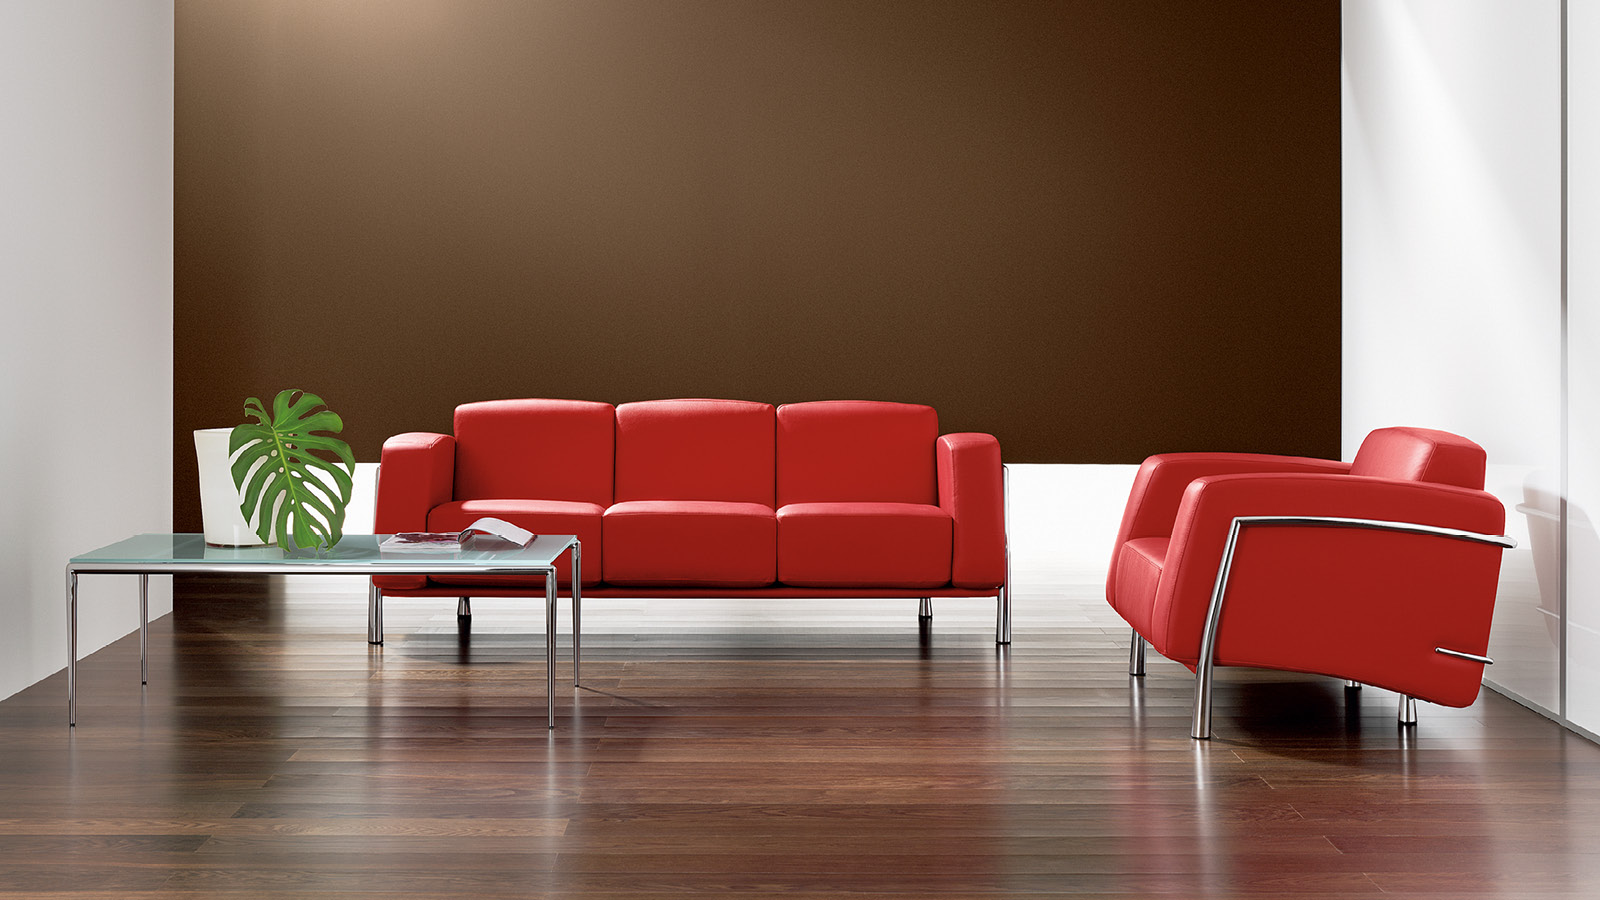 Przestrzeń do rozmów wyposażono w czerwoną, 3-osobową sofę, 1-osobowy fotel w tożsamym kolorze oraz szklany stolik kawowy.